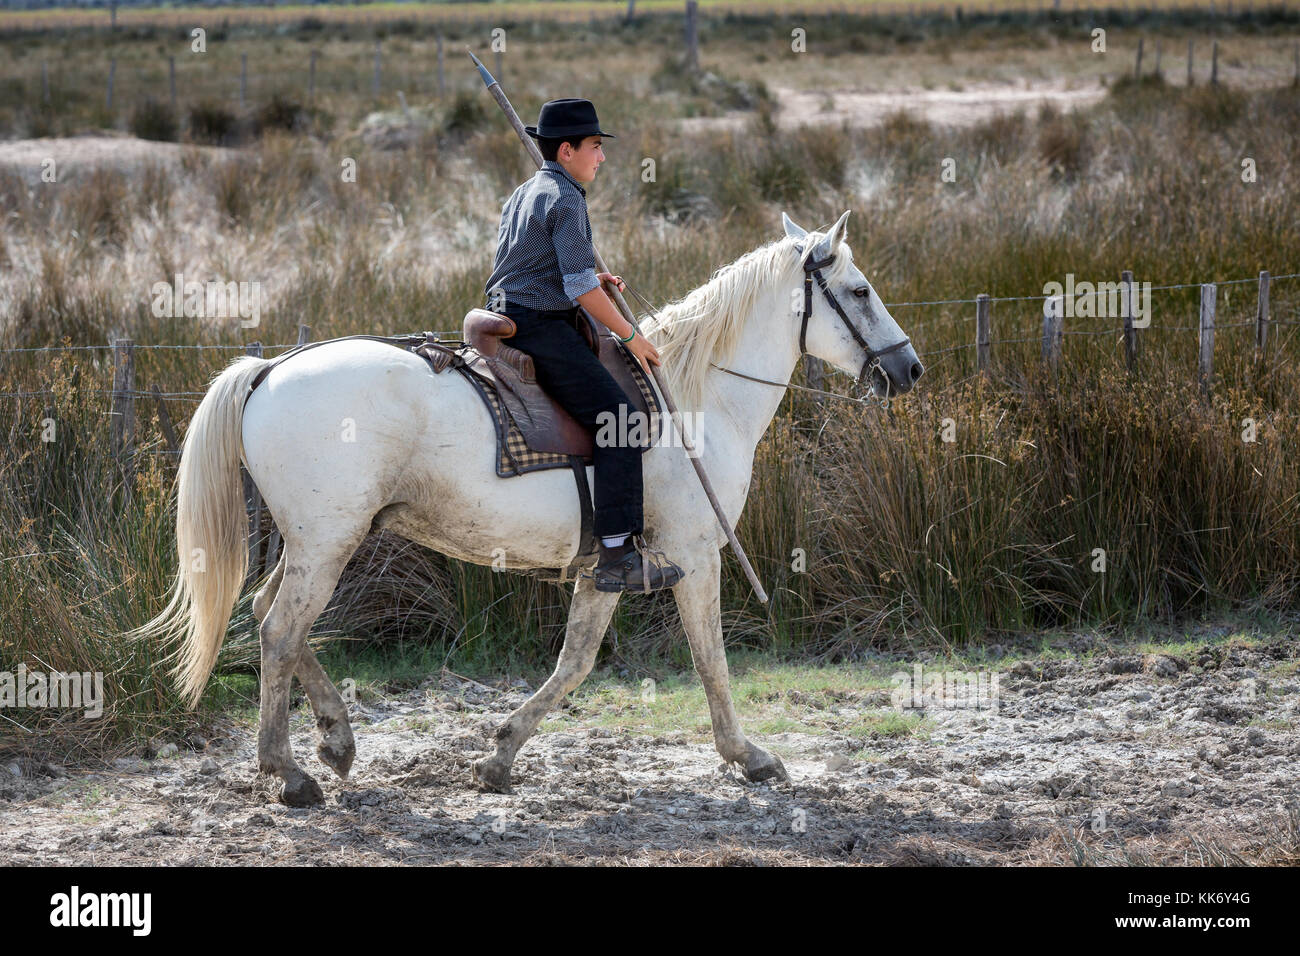 Ein junger französischer Guardian/Gardian auf Pferd, die Camargue, Frankreich Stockfoto